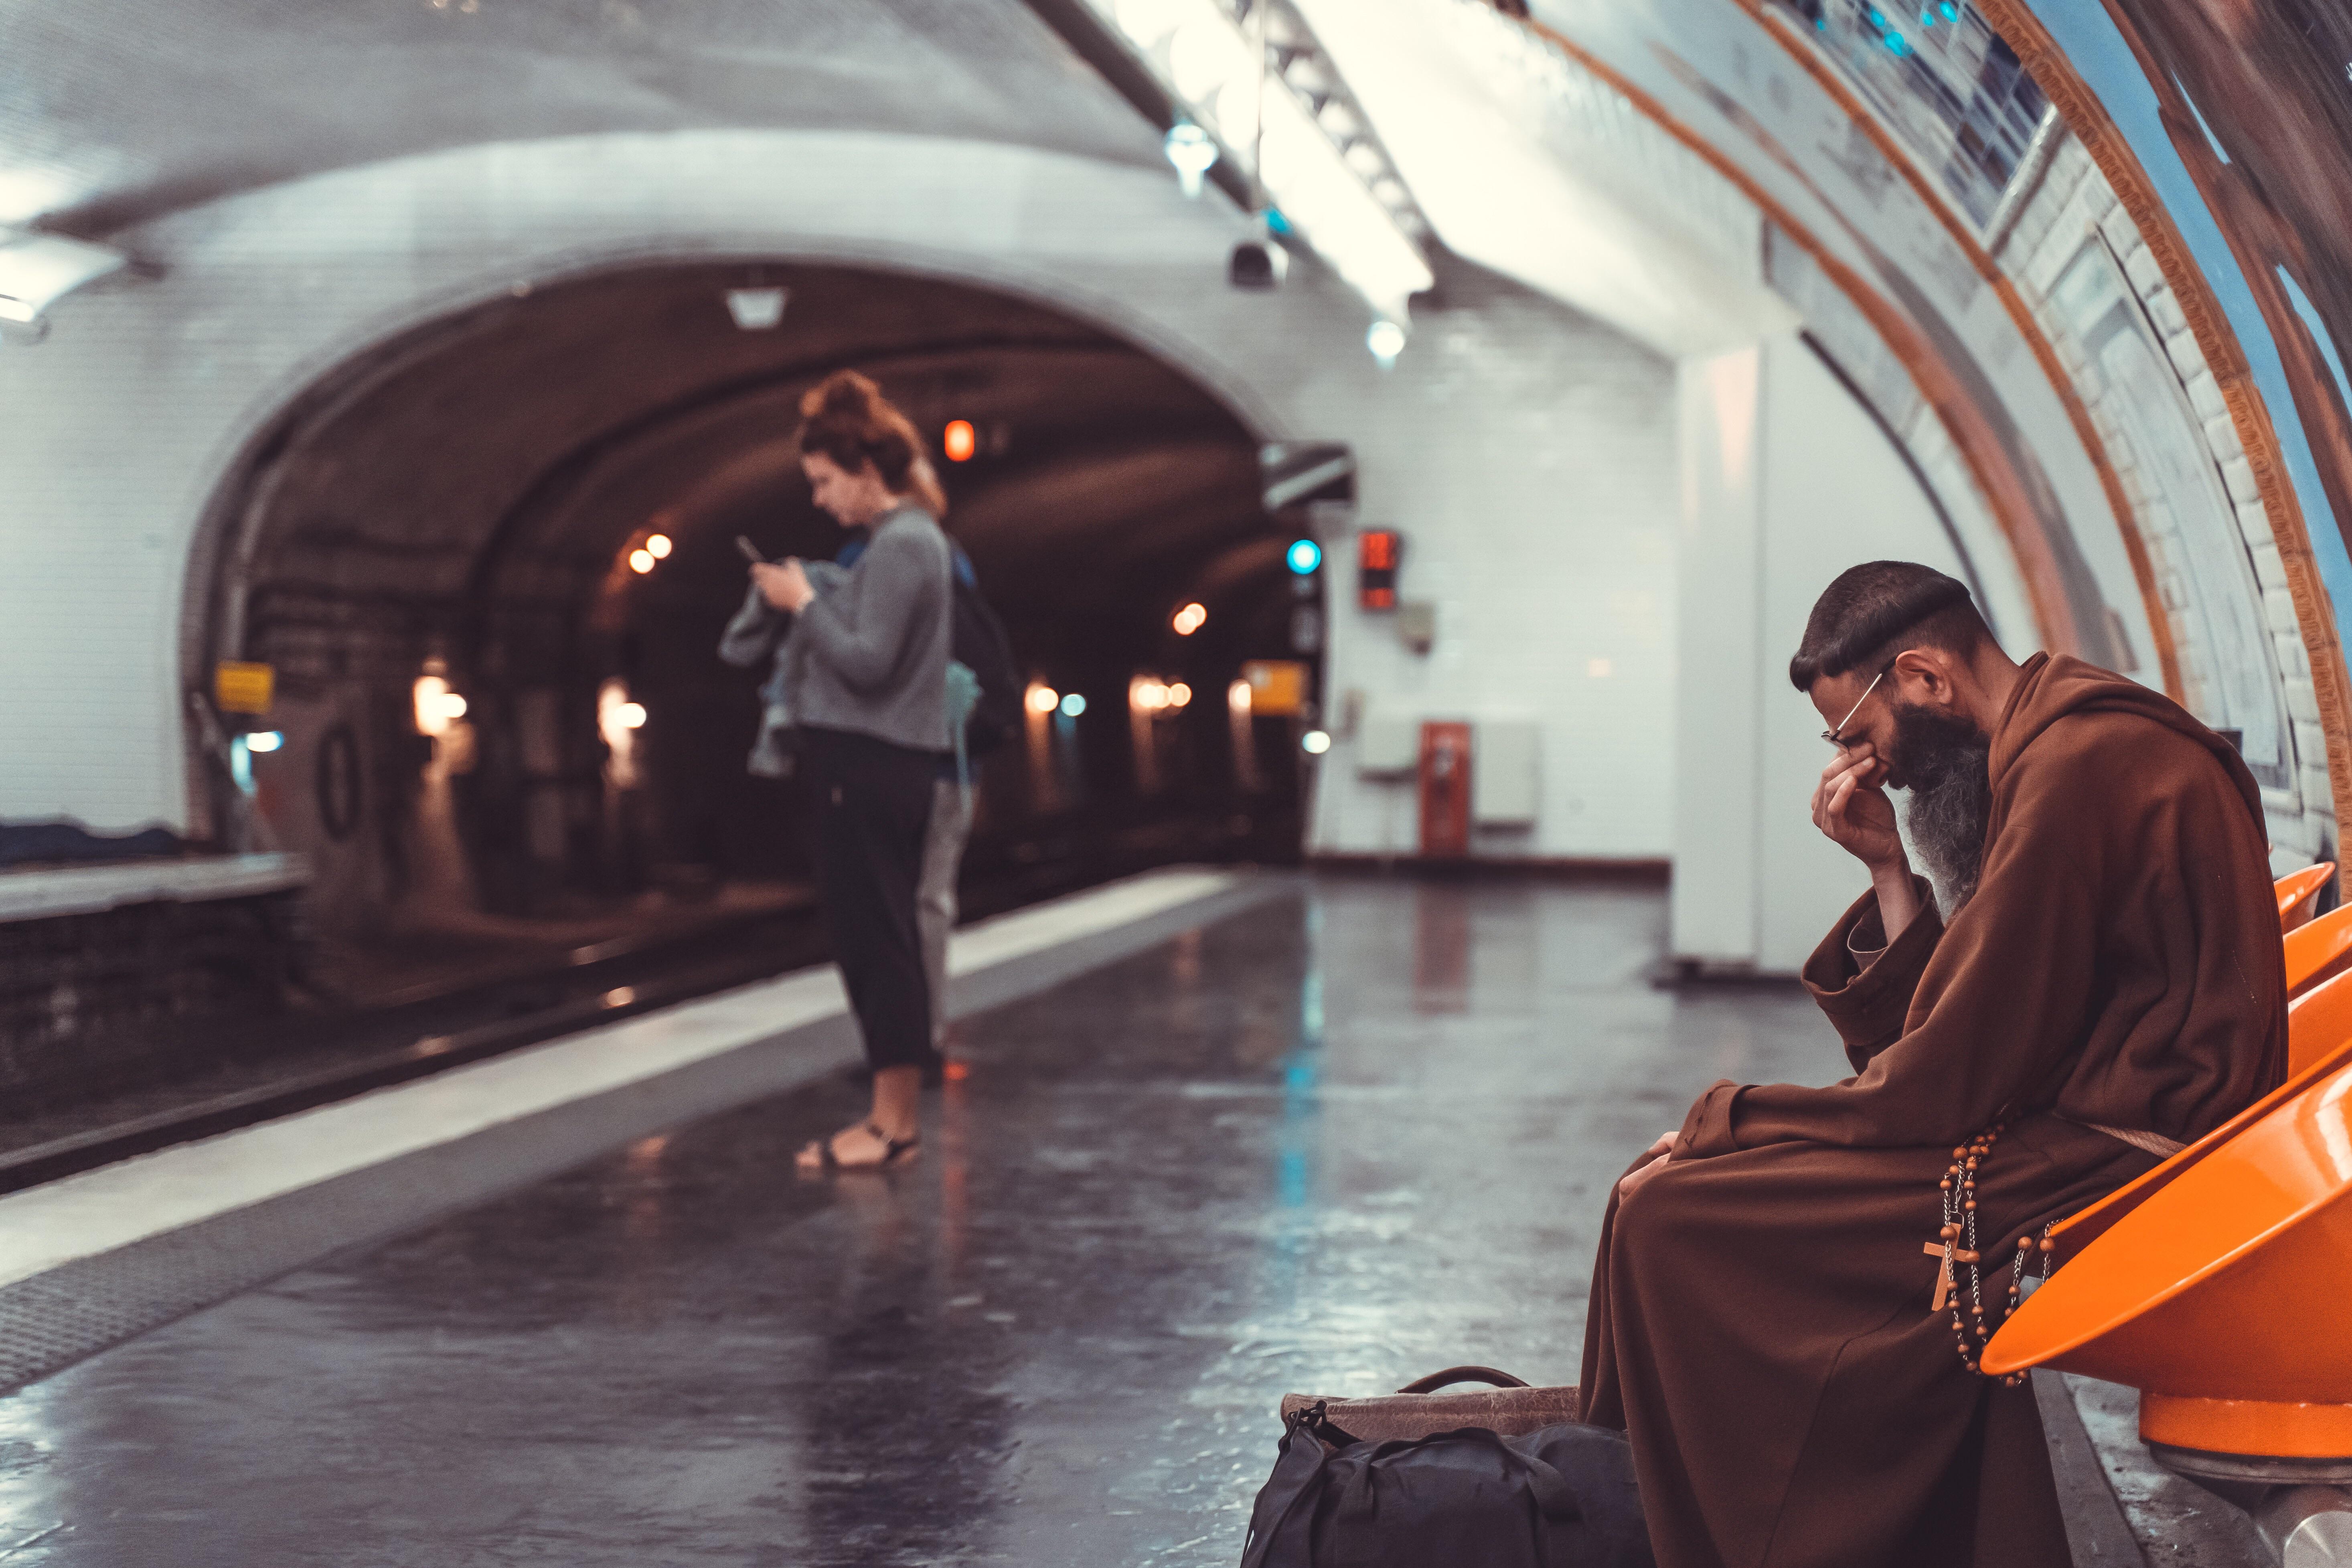 Францисканский монах в метро, Париж. Фотограф VampireCampfire1